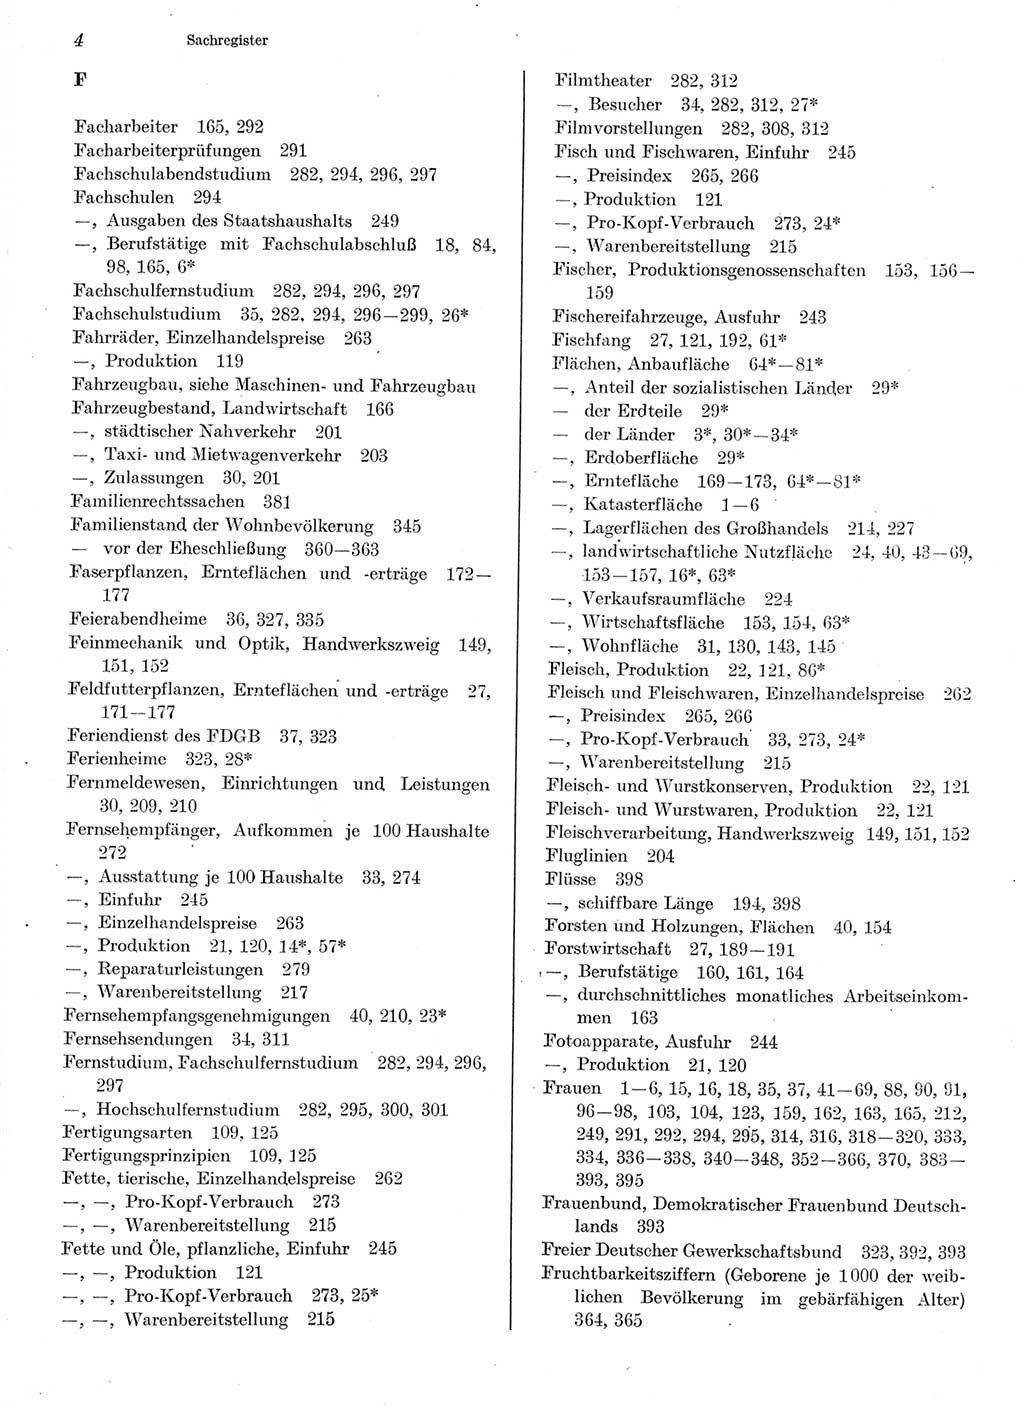 Statistisches Jahrbuch der Deutschen Demokratischen Republik (DDR) 1978, Seite 4 (Stat. Jb. DDR 1978, S. 4)